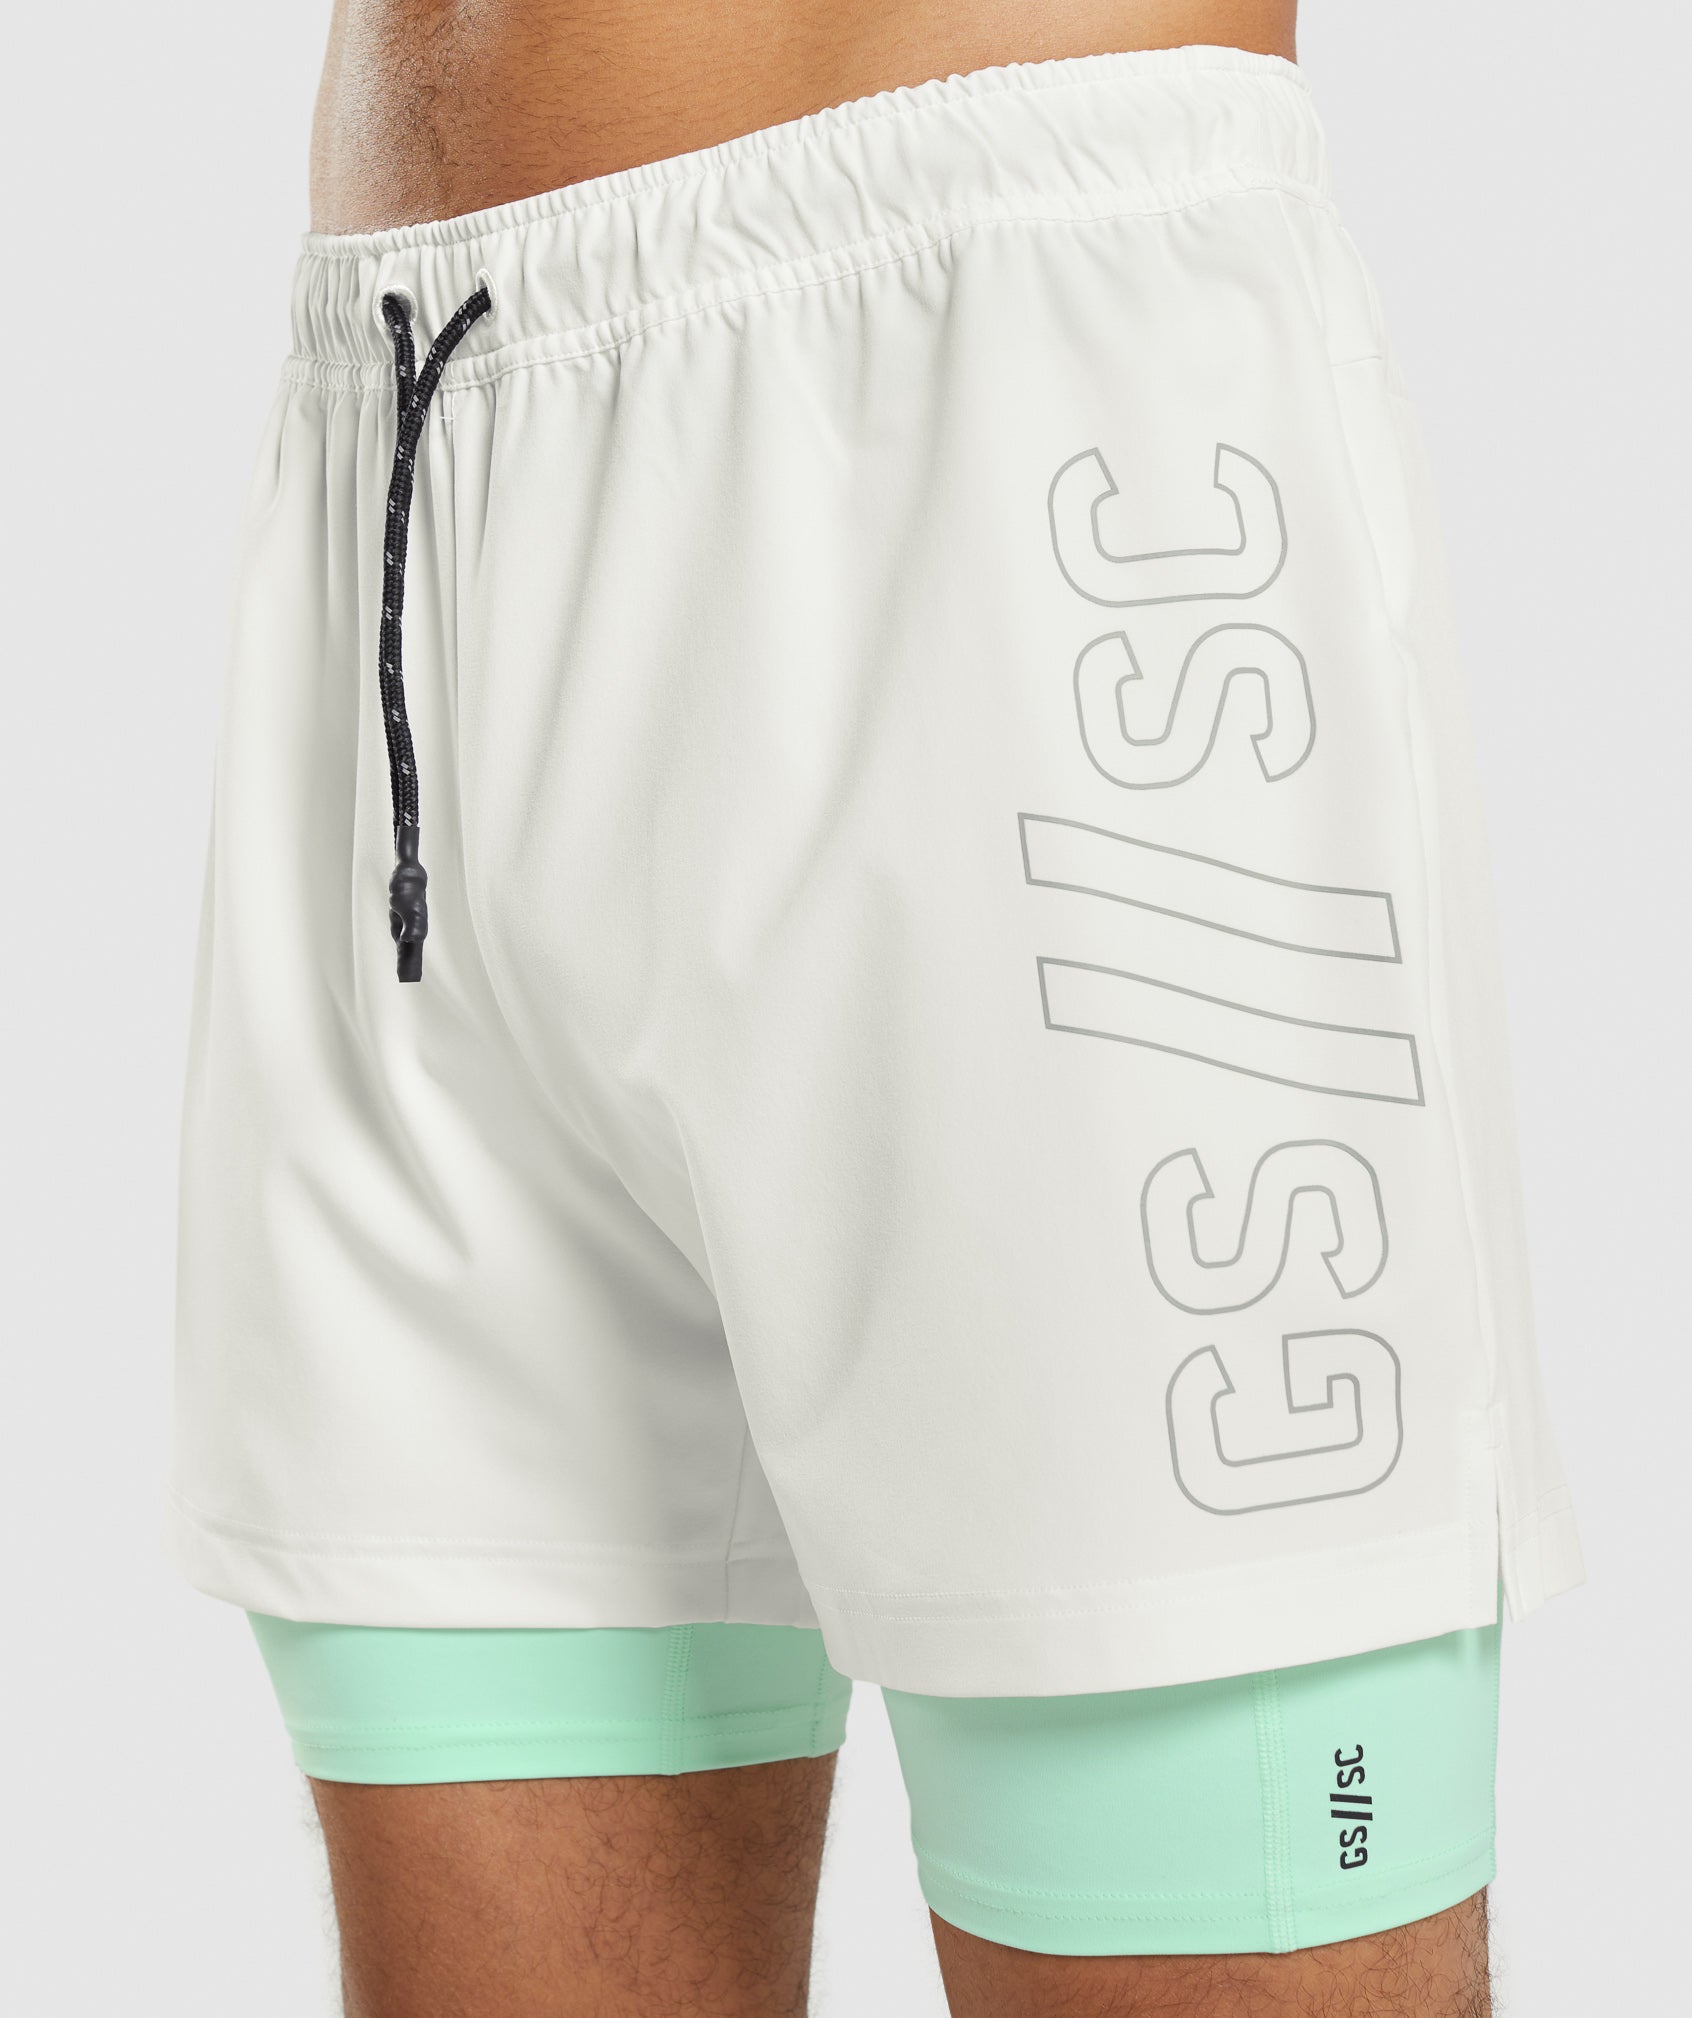 Gymshark//Steve Cook Ranger Shorts in Off White